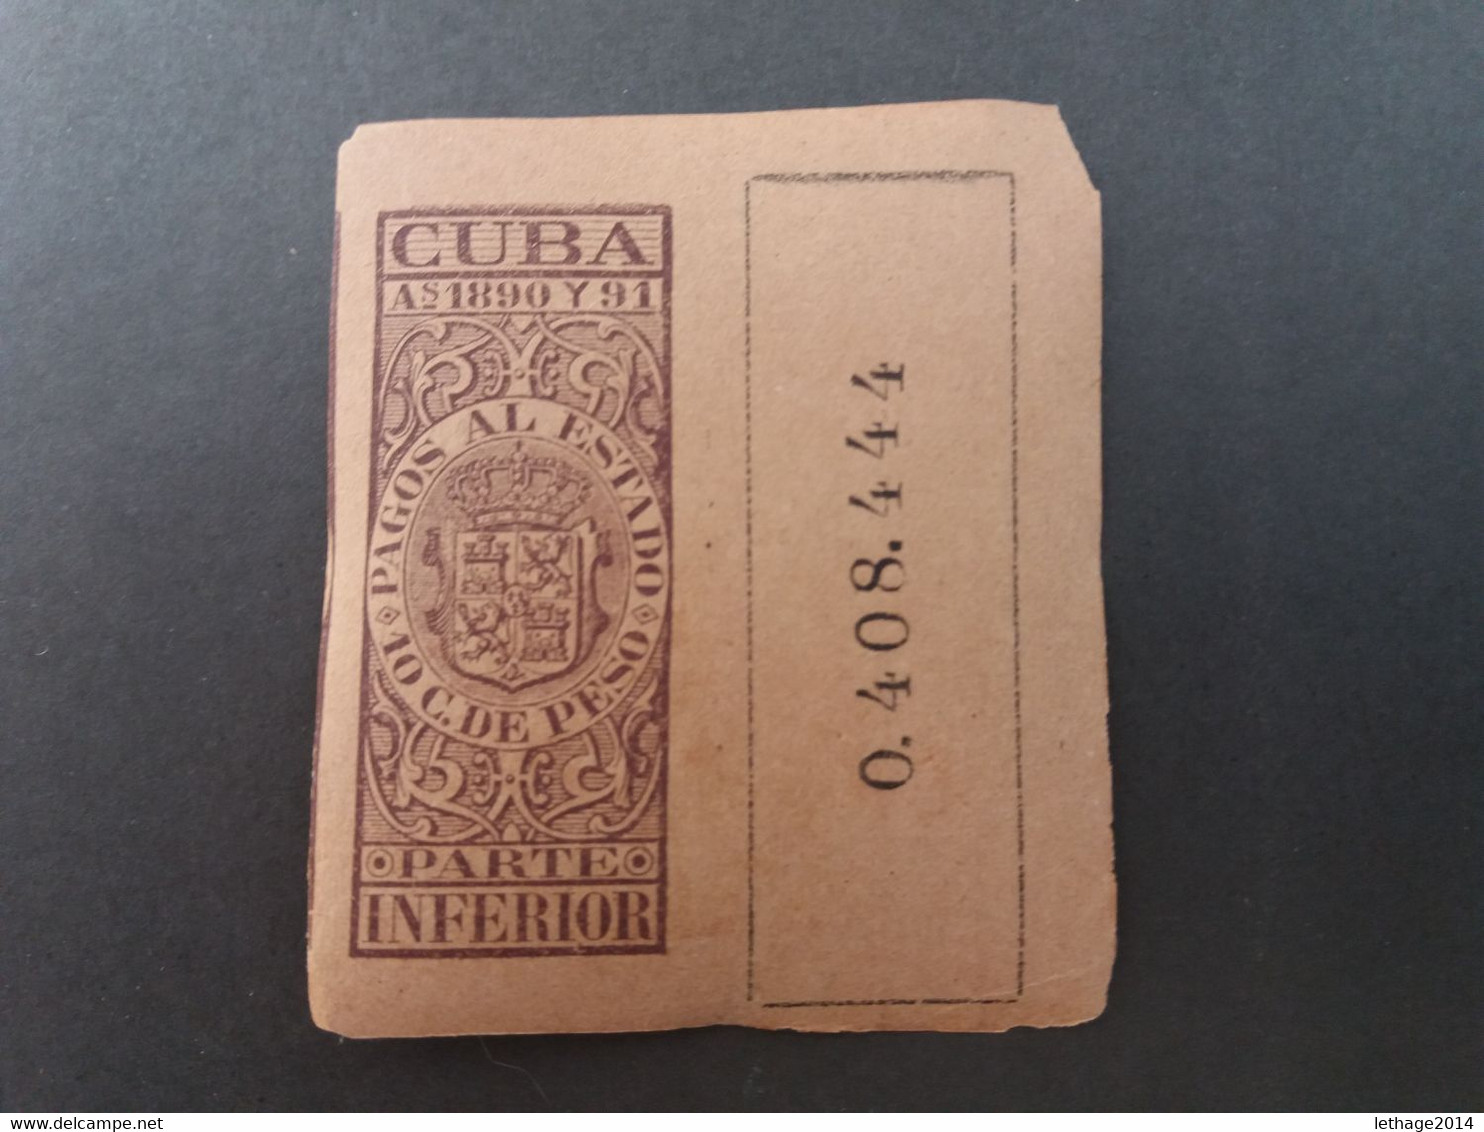 STAMPS CUBA 1890  "Pagos Al Estado " Fiscal Stamps For Telegraphs. MNH - Telegraphenmarken